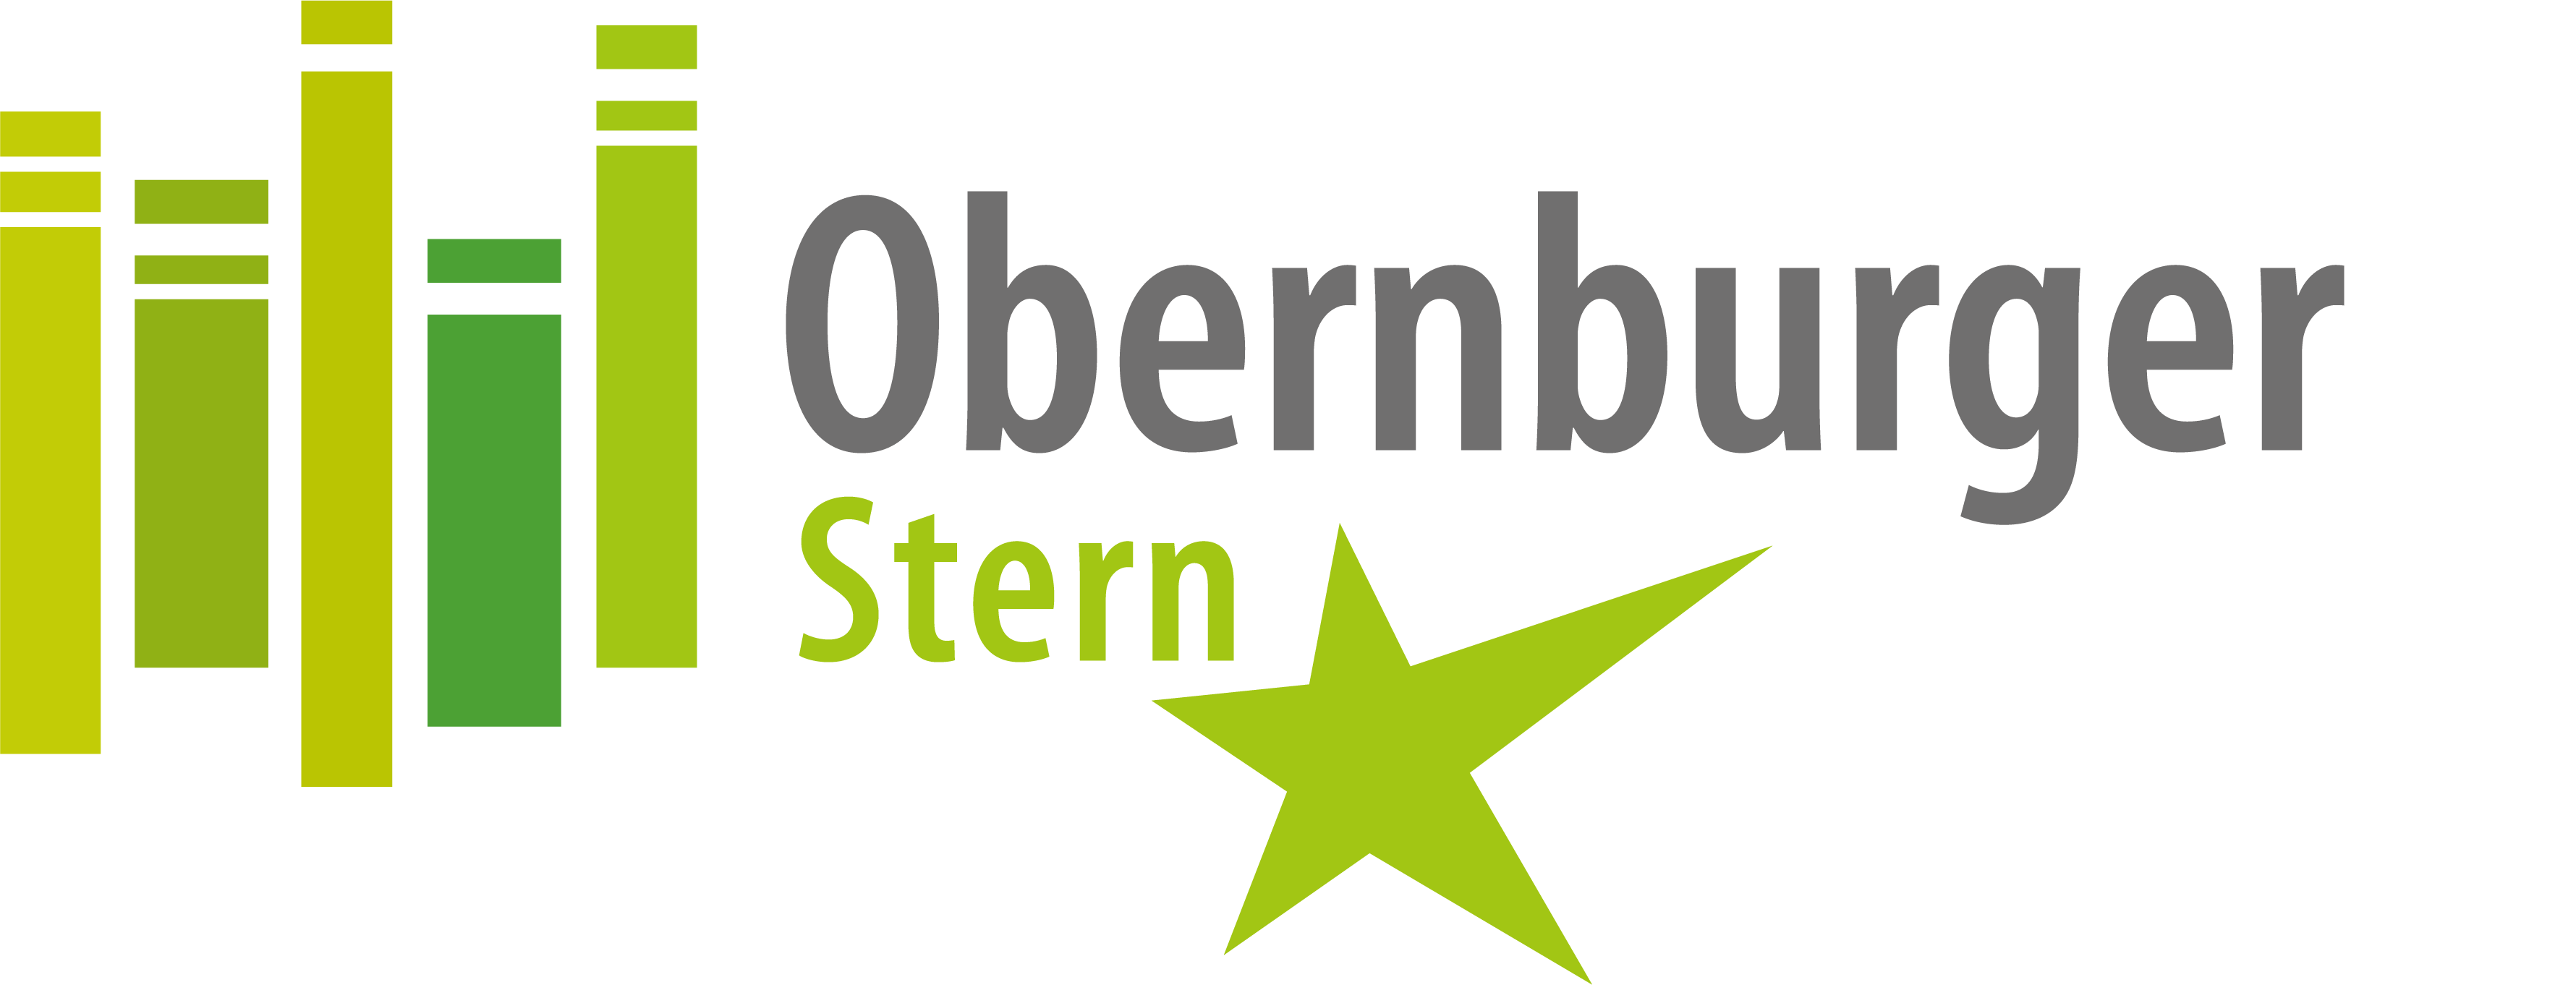 Obernburger Stern